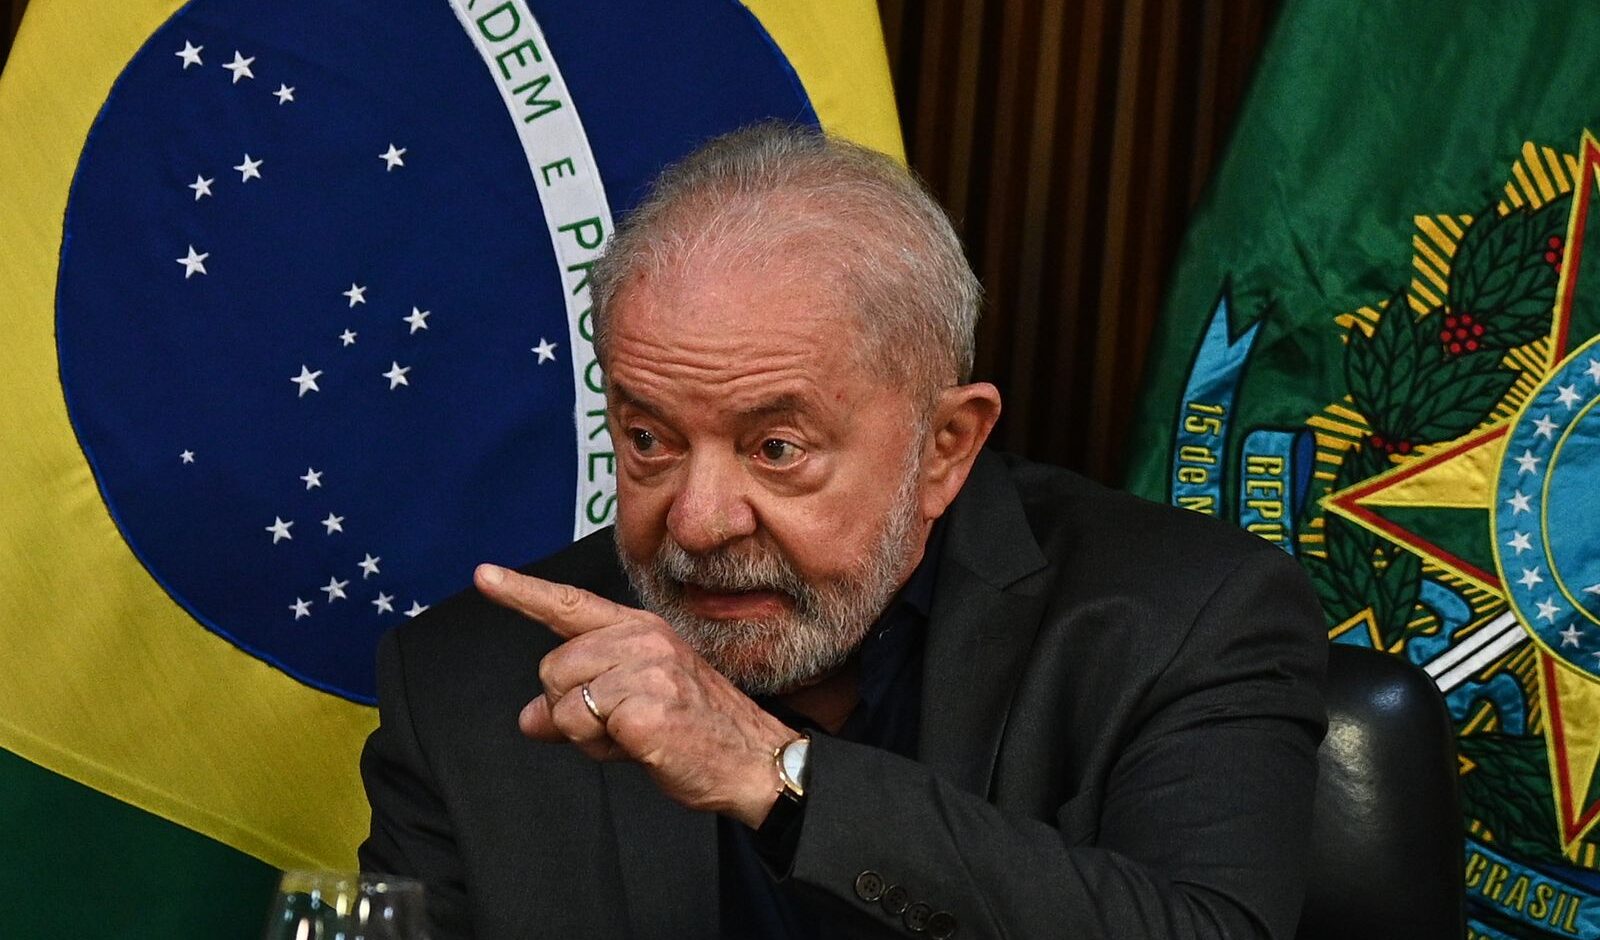 In Brasile la destra vuole l'impeachment di Lula per le sue forti critiche contro l'operato di Israele a Gaza